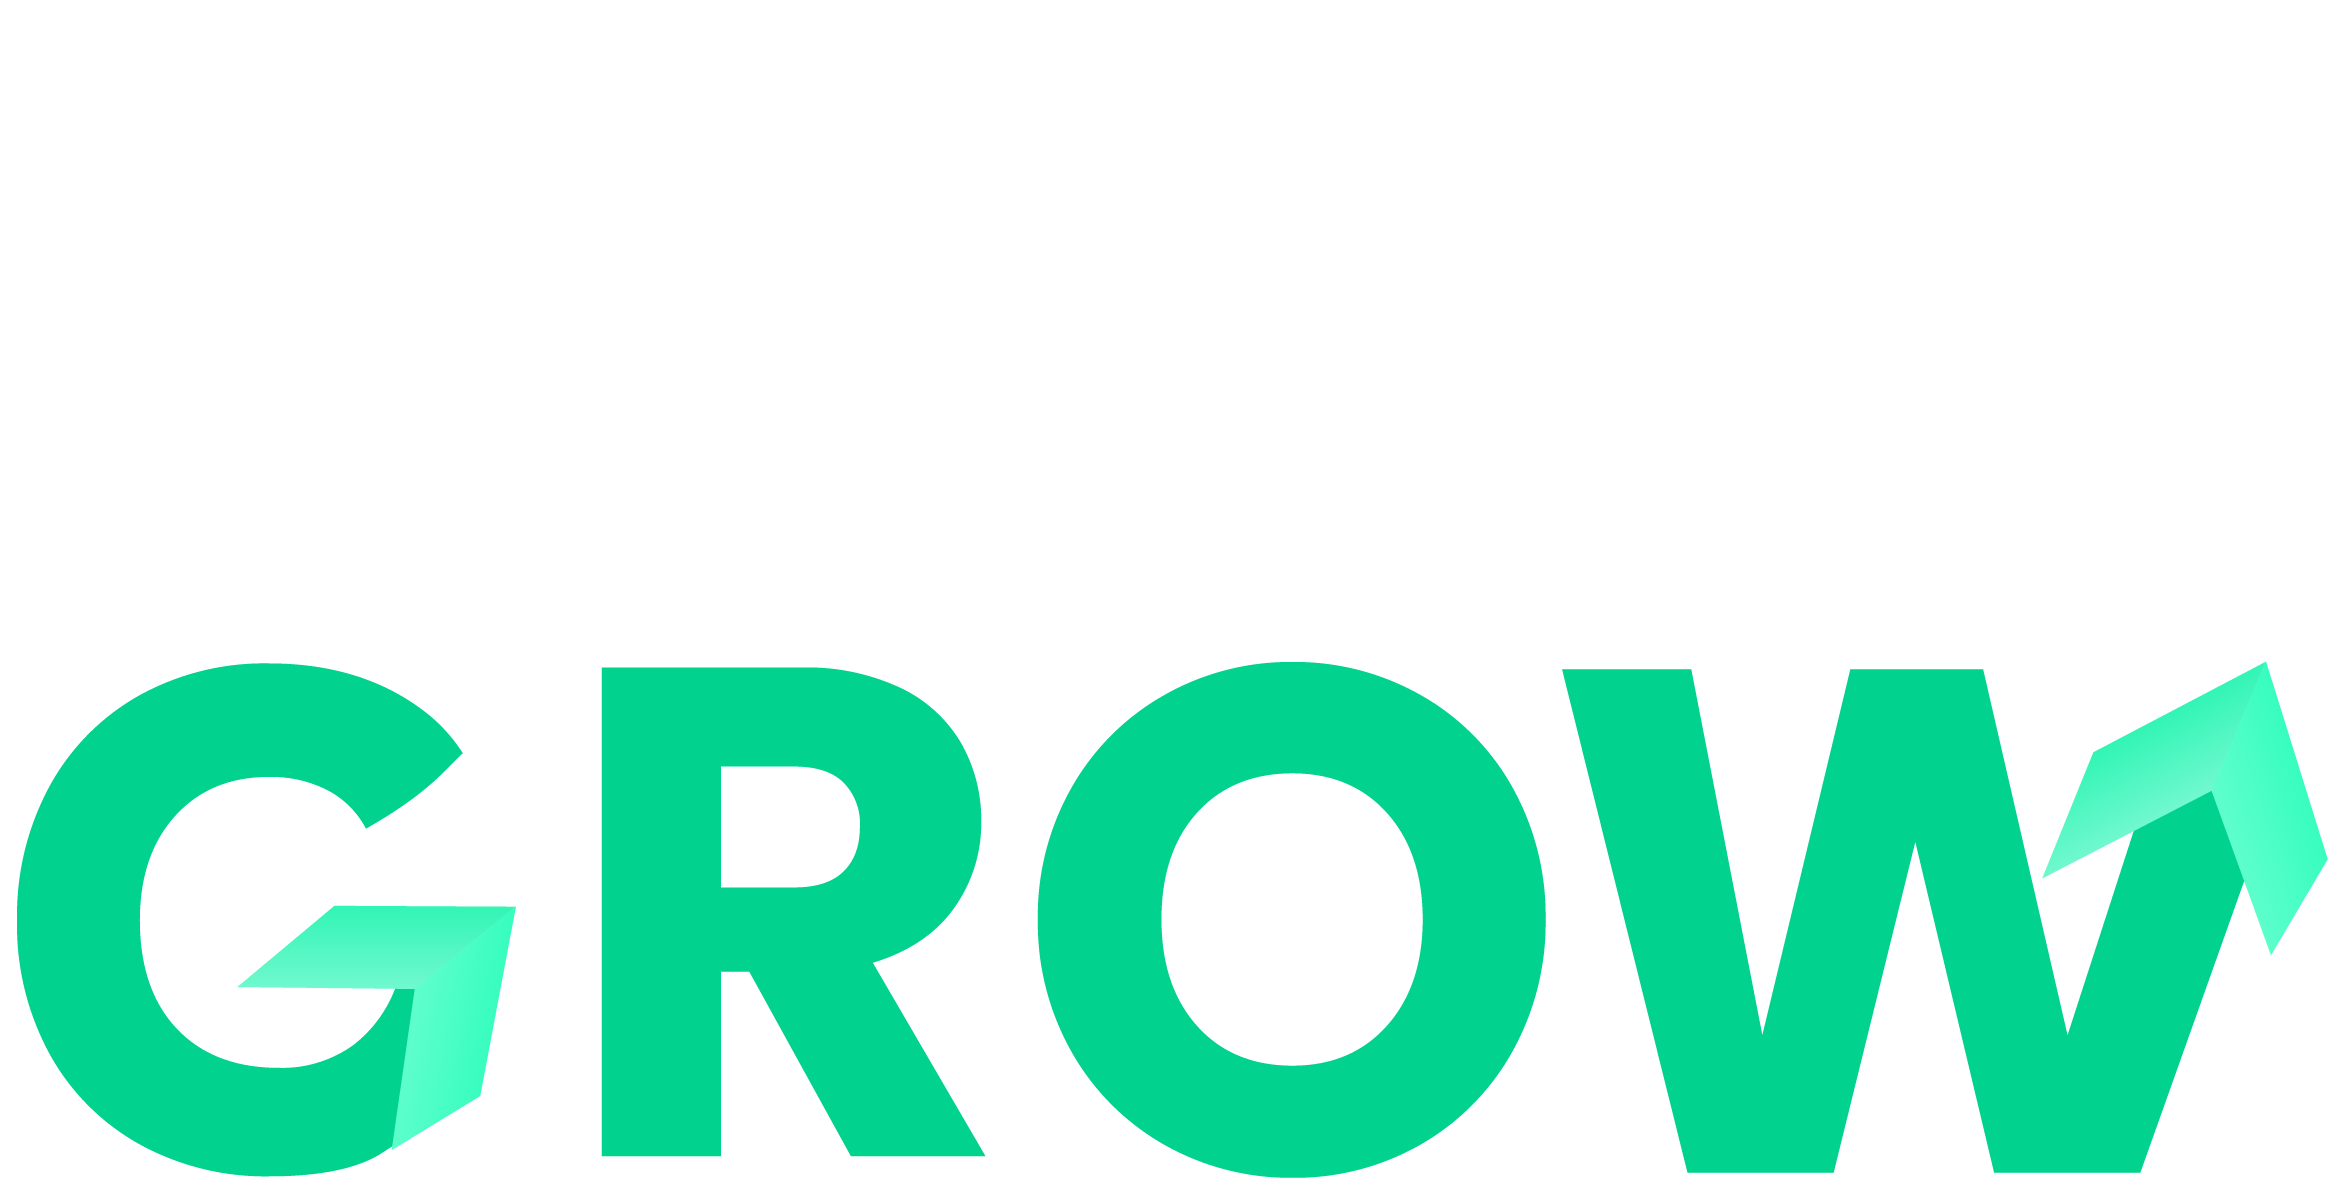 Get Set Grow